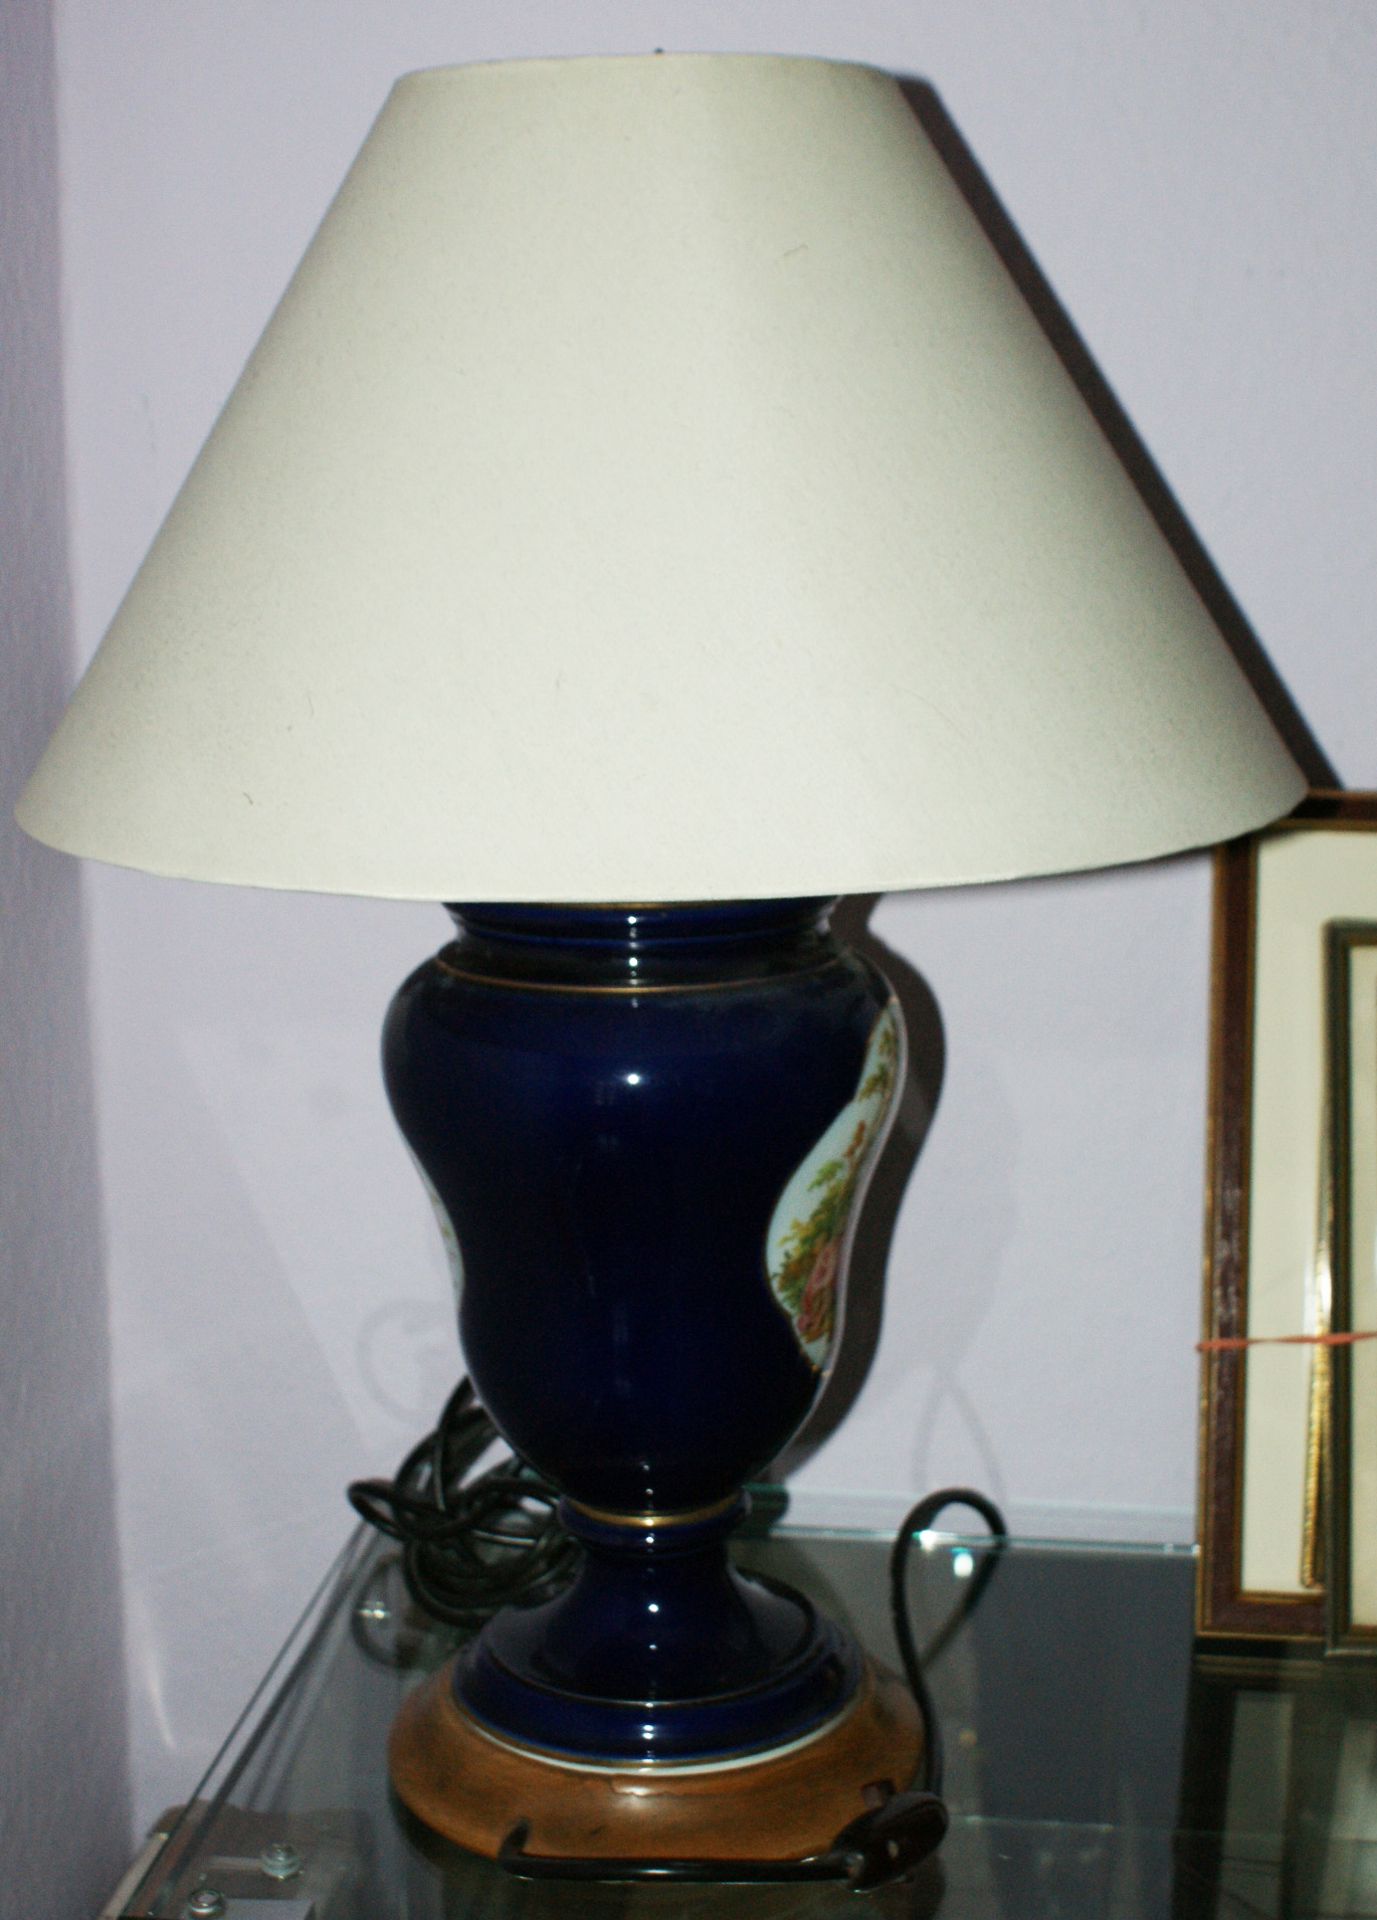 1 Porzellan-Lampe, kobaltblau, mit feiner Malerei. 1x Blumenbouquet, sowie 1 romantische Szene. - Image 4 of 4